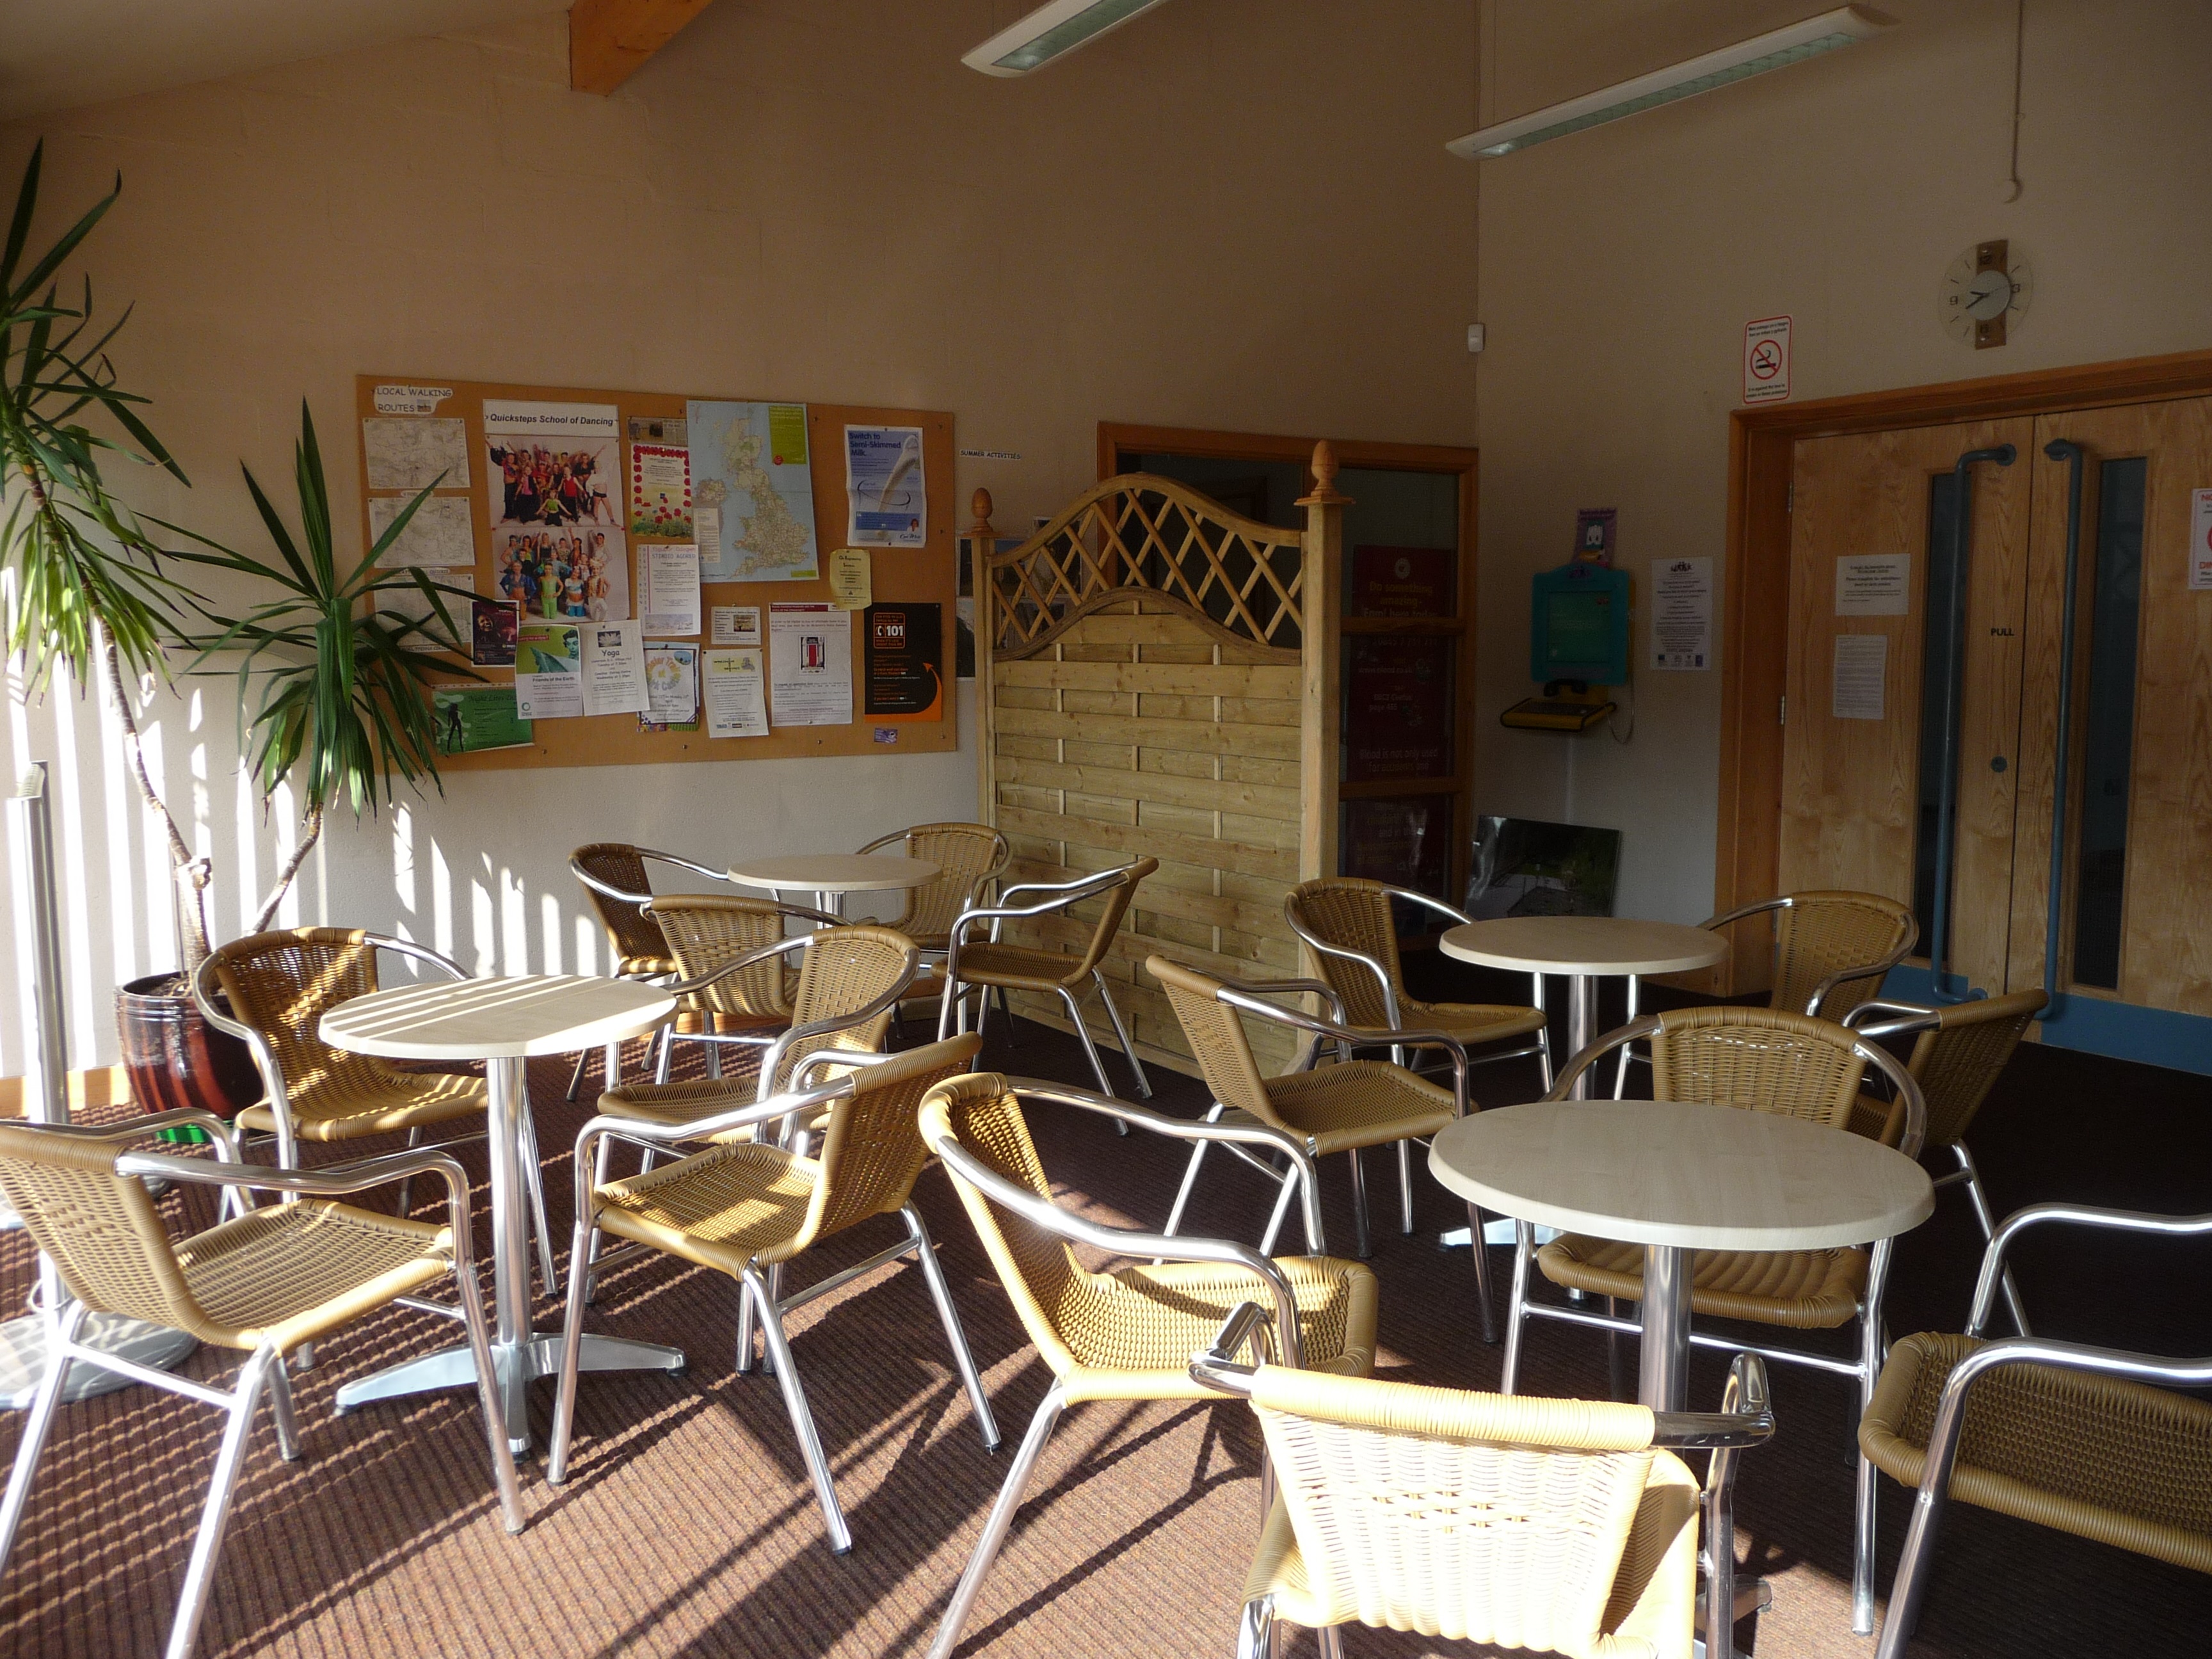 011 Cafe - reception area